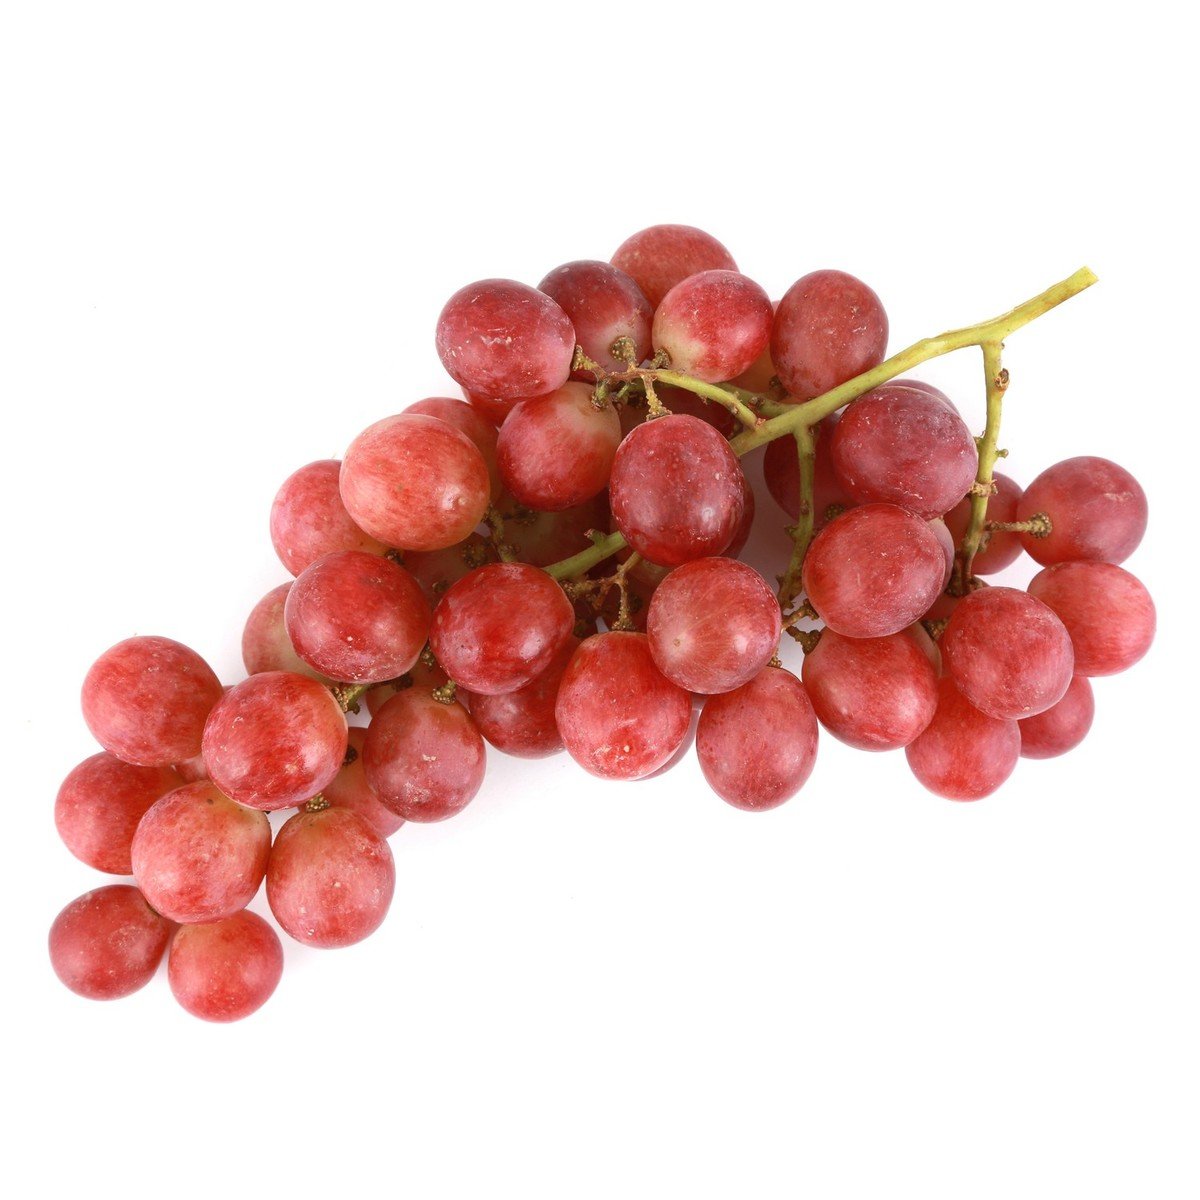 Grapes Red Globe Peru 500 g